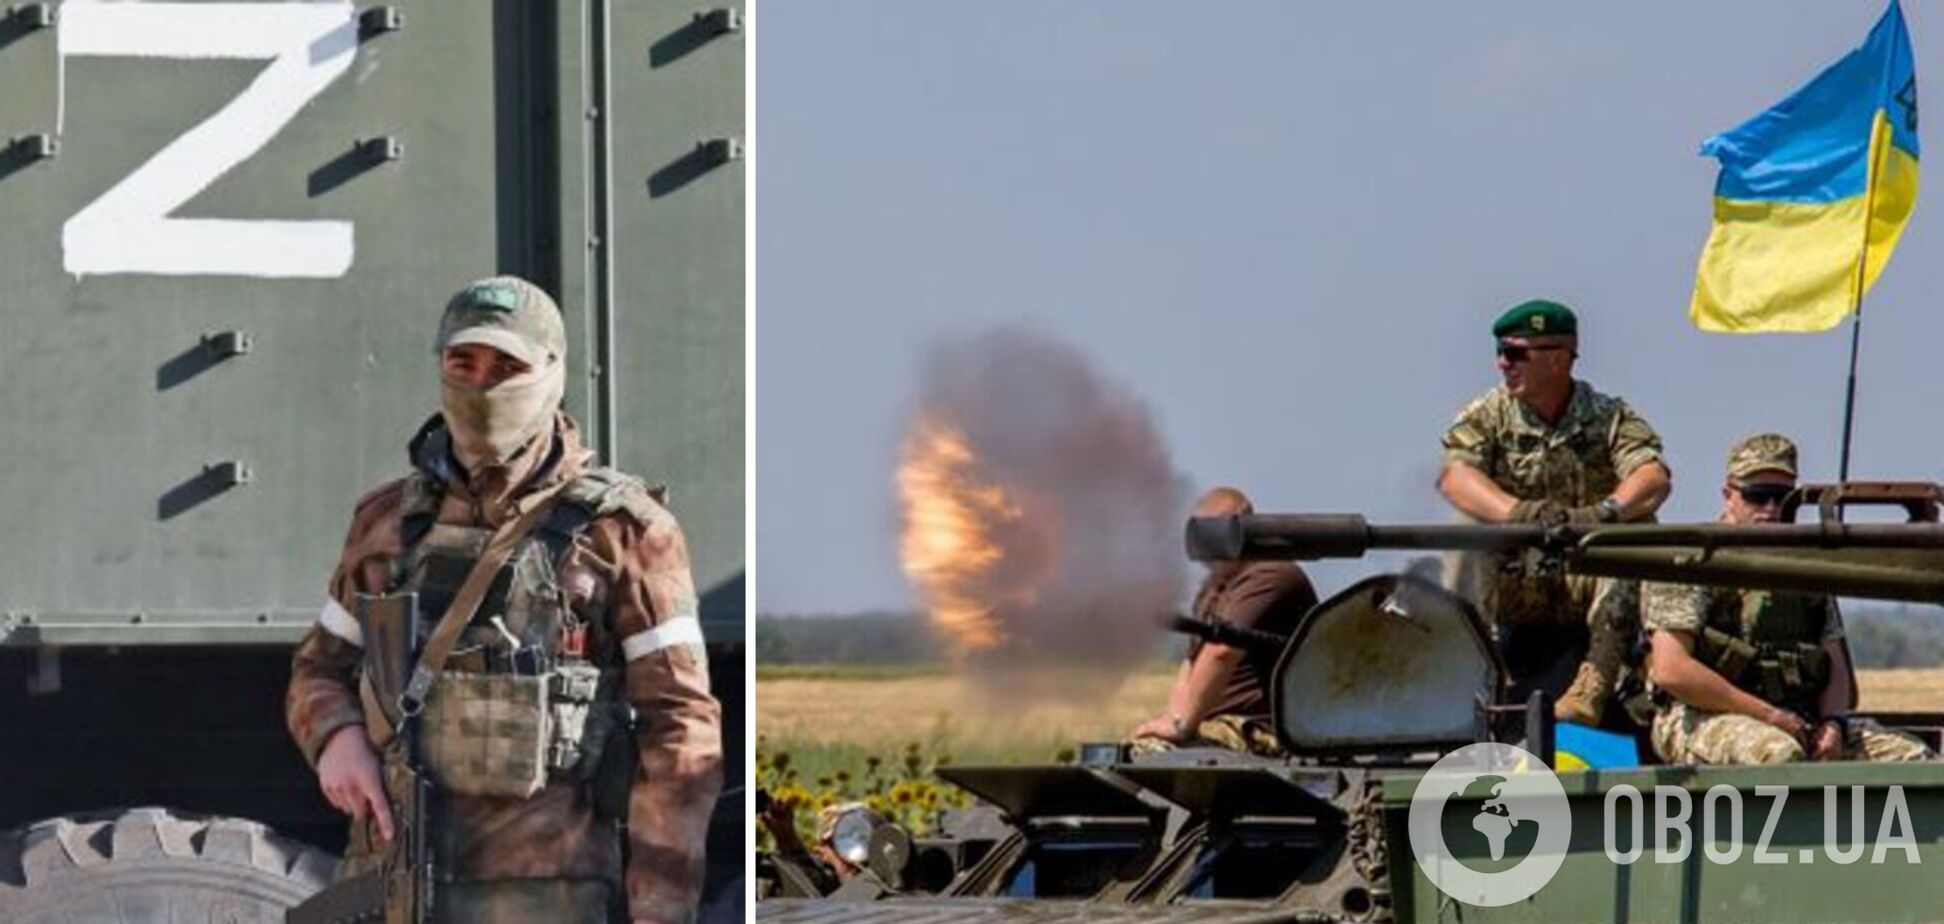 'Все против России': оккупанты огорчены военной помощью Запада Украине и жалуются на свое обеспечение. Аудио